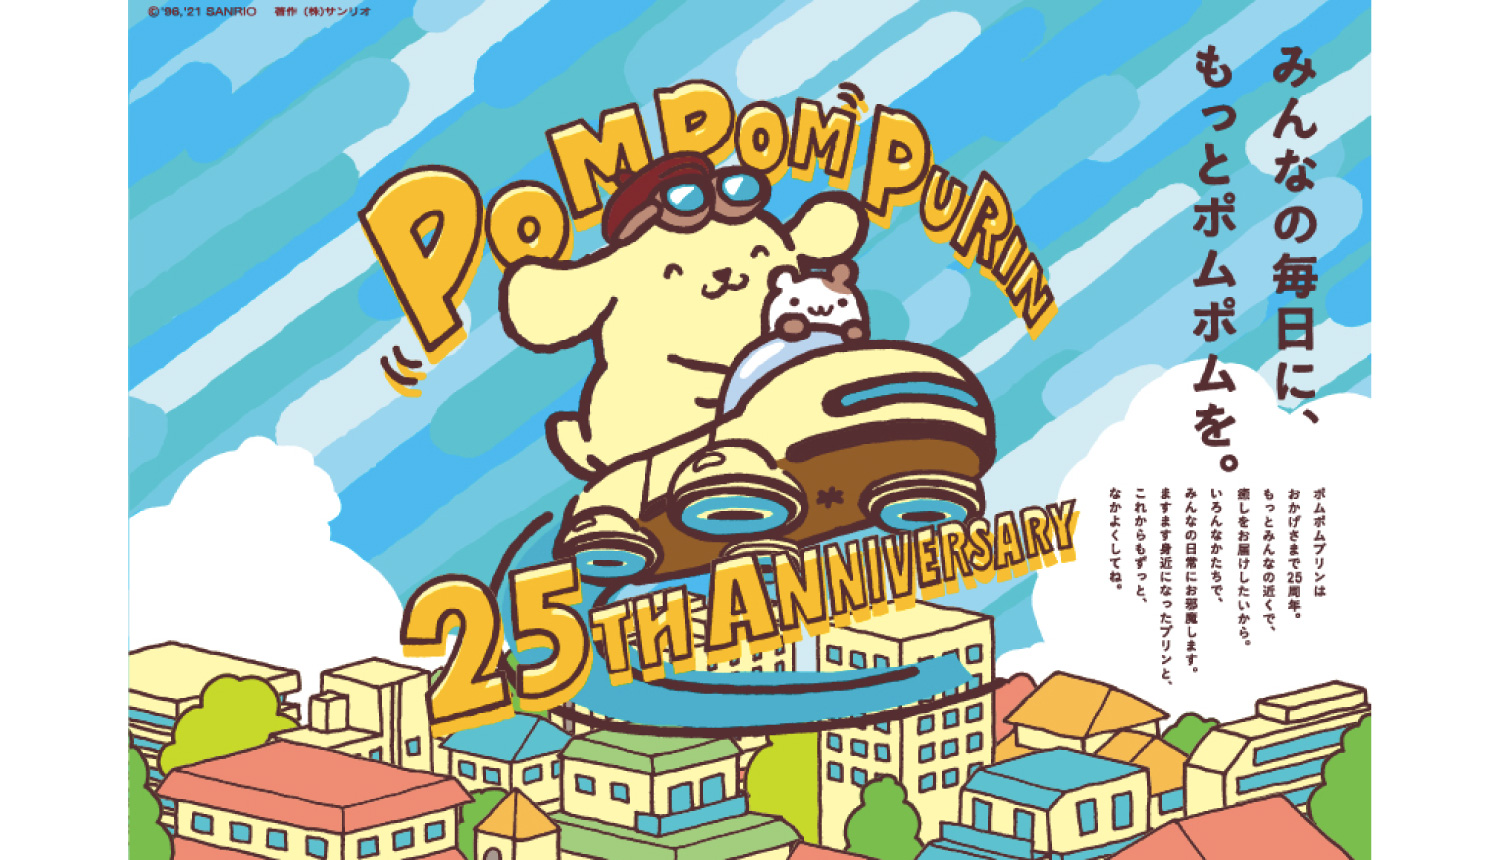 ポムポムプリン25周年-ポム主総会-Pompompurin-布丁狗